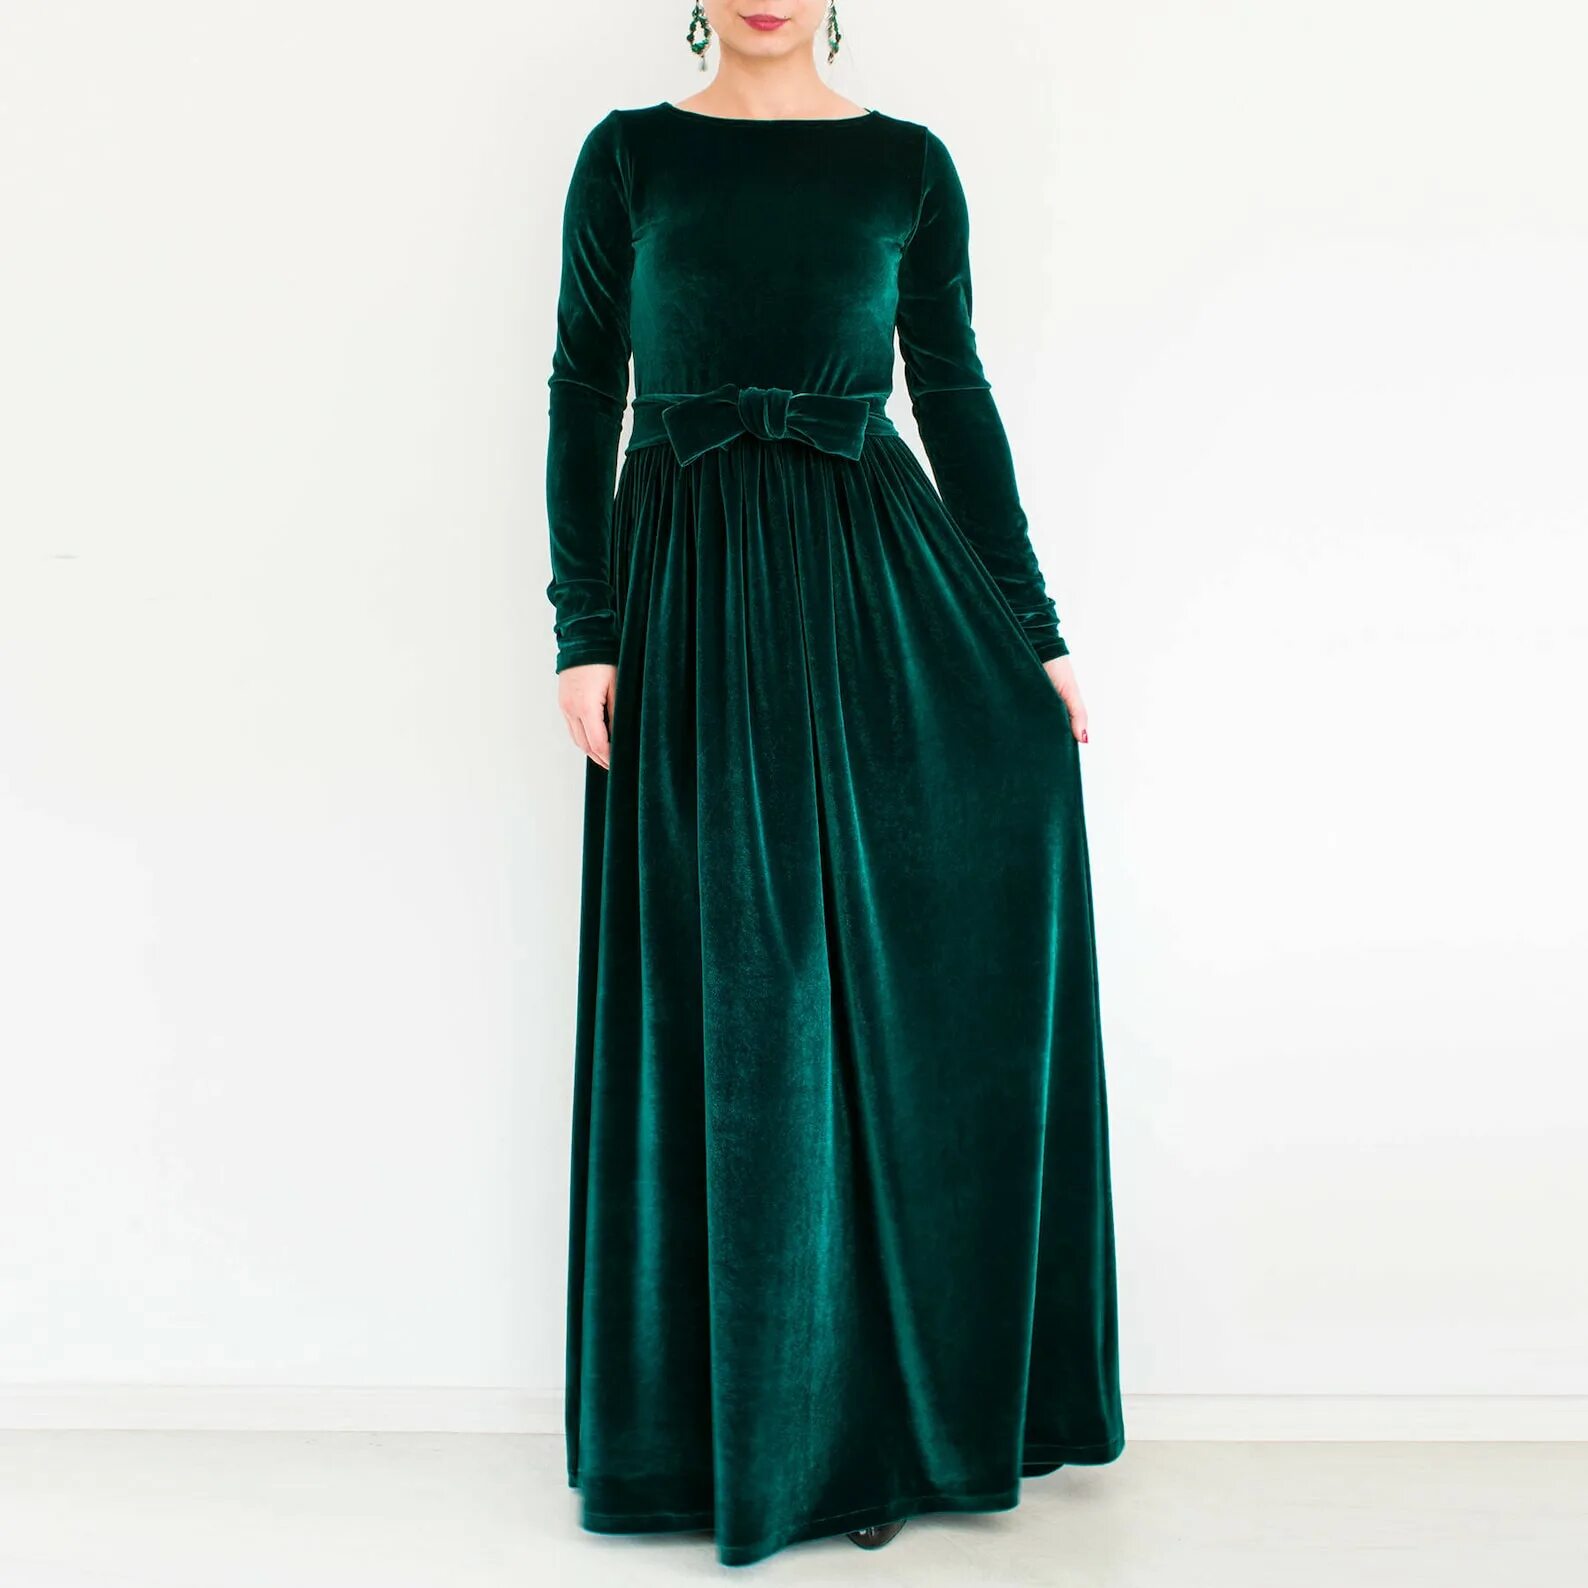 Длинное бархатное платье. Marella зеленое бархатное платье. Бархатное платье 2020 макси. Вельветовые платья макси размер плюс. Вельветовое Изумрудное платье.